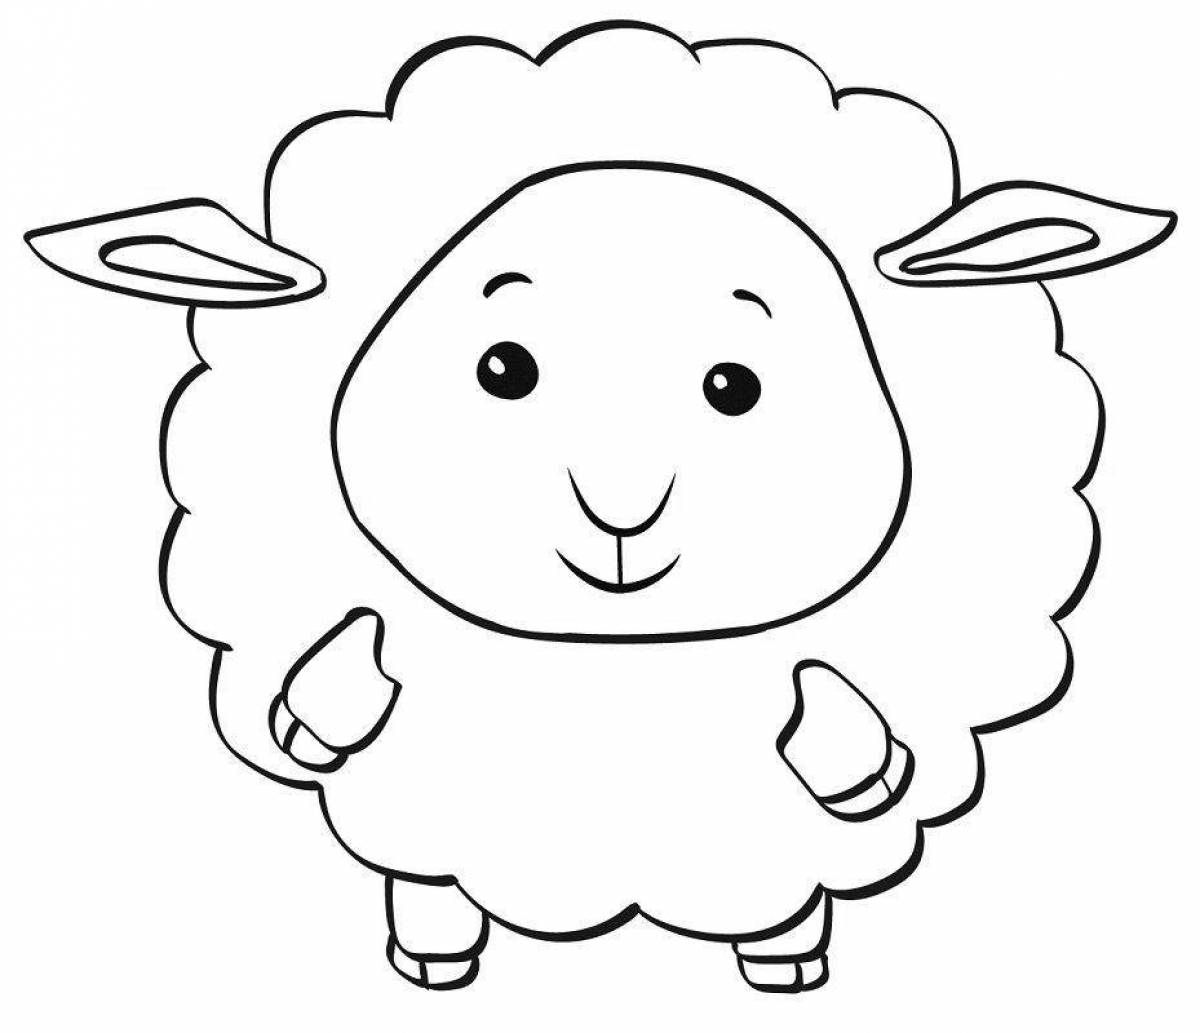 Яркая раскраска овечка для детей